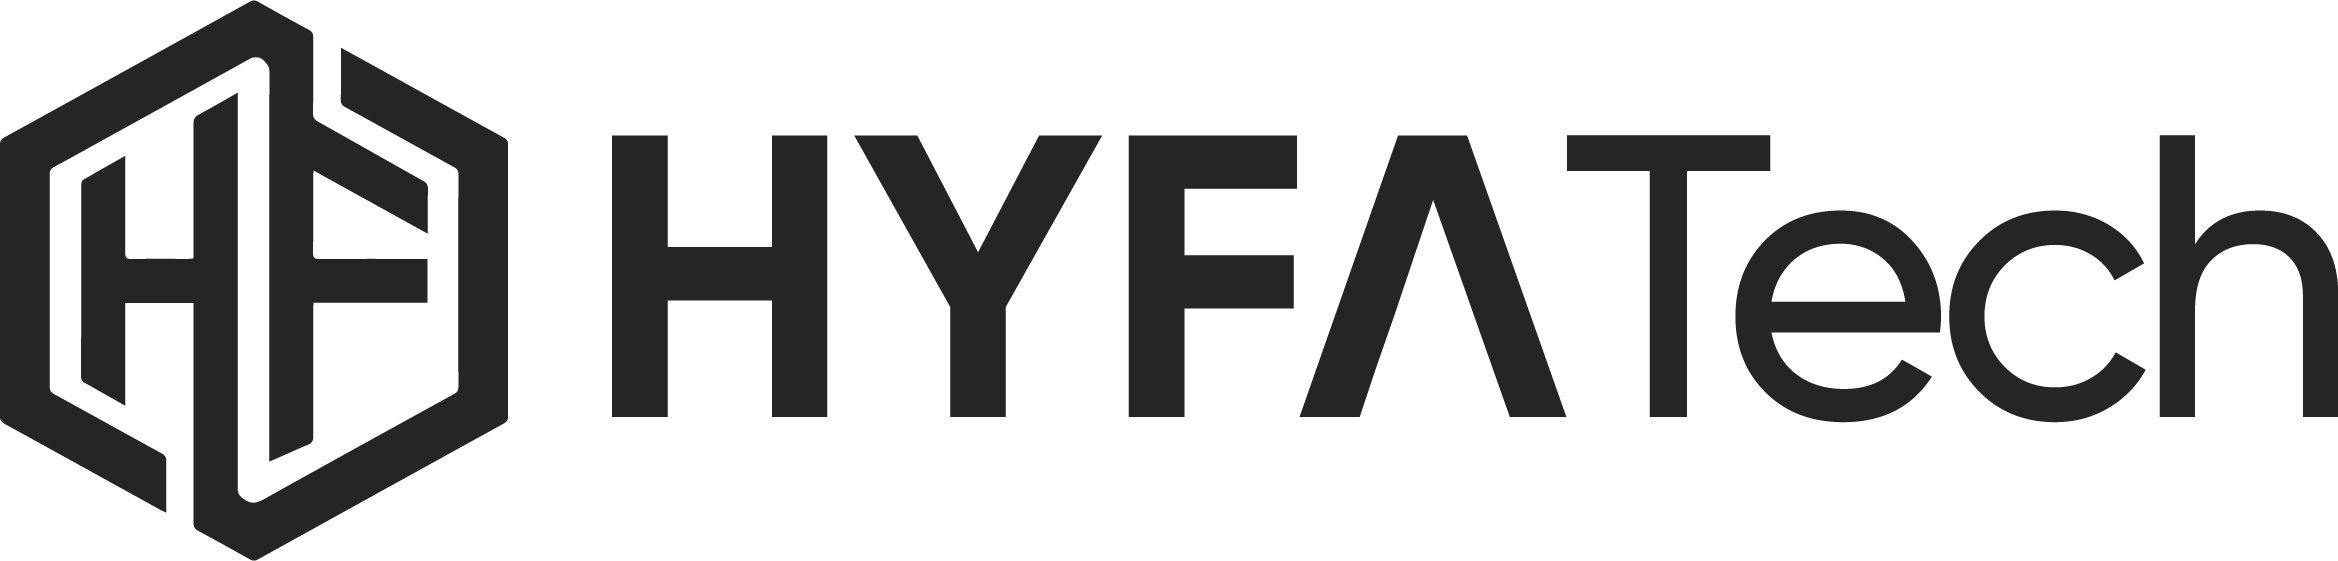 HYFATech